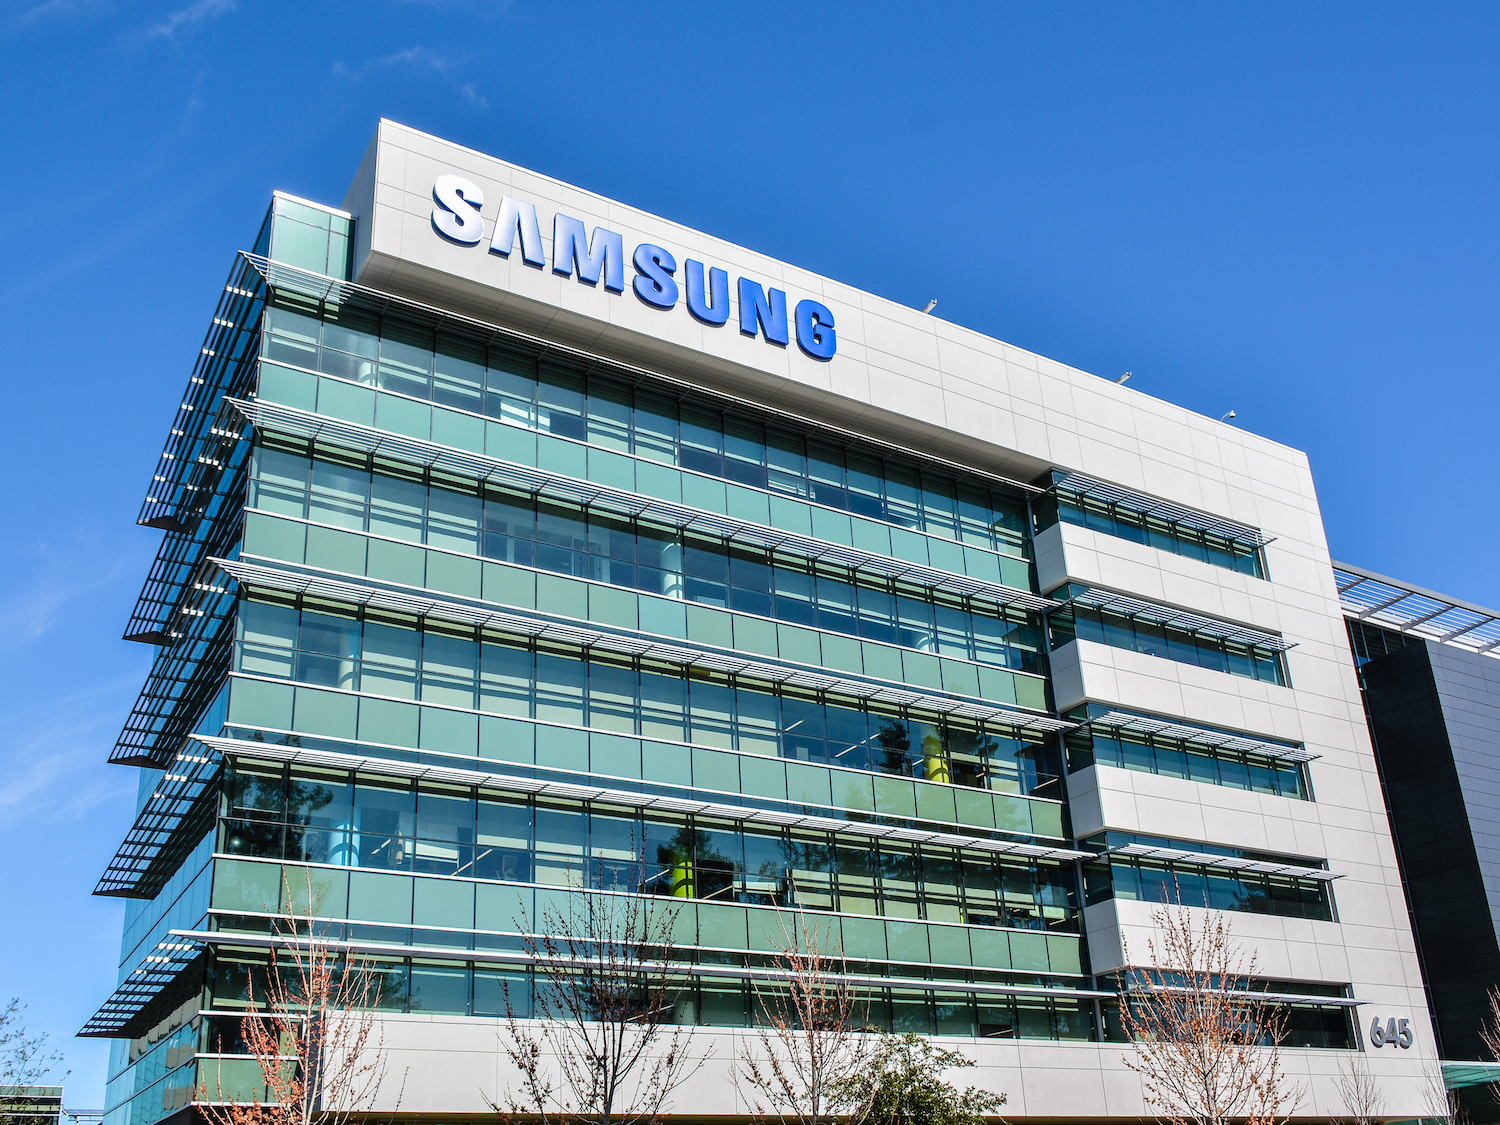 Crise da Huawei deve fazer lucro da Samsung cair mais de 50%